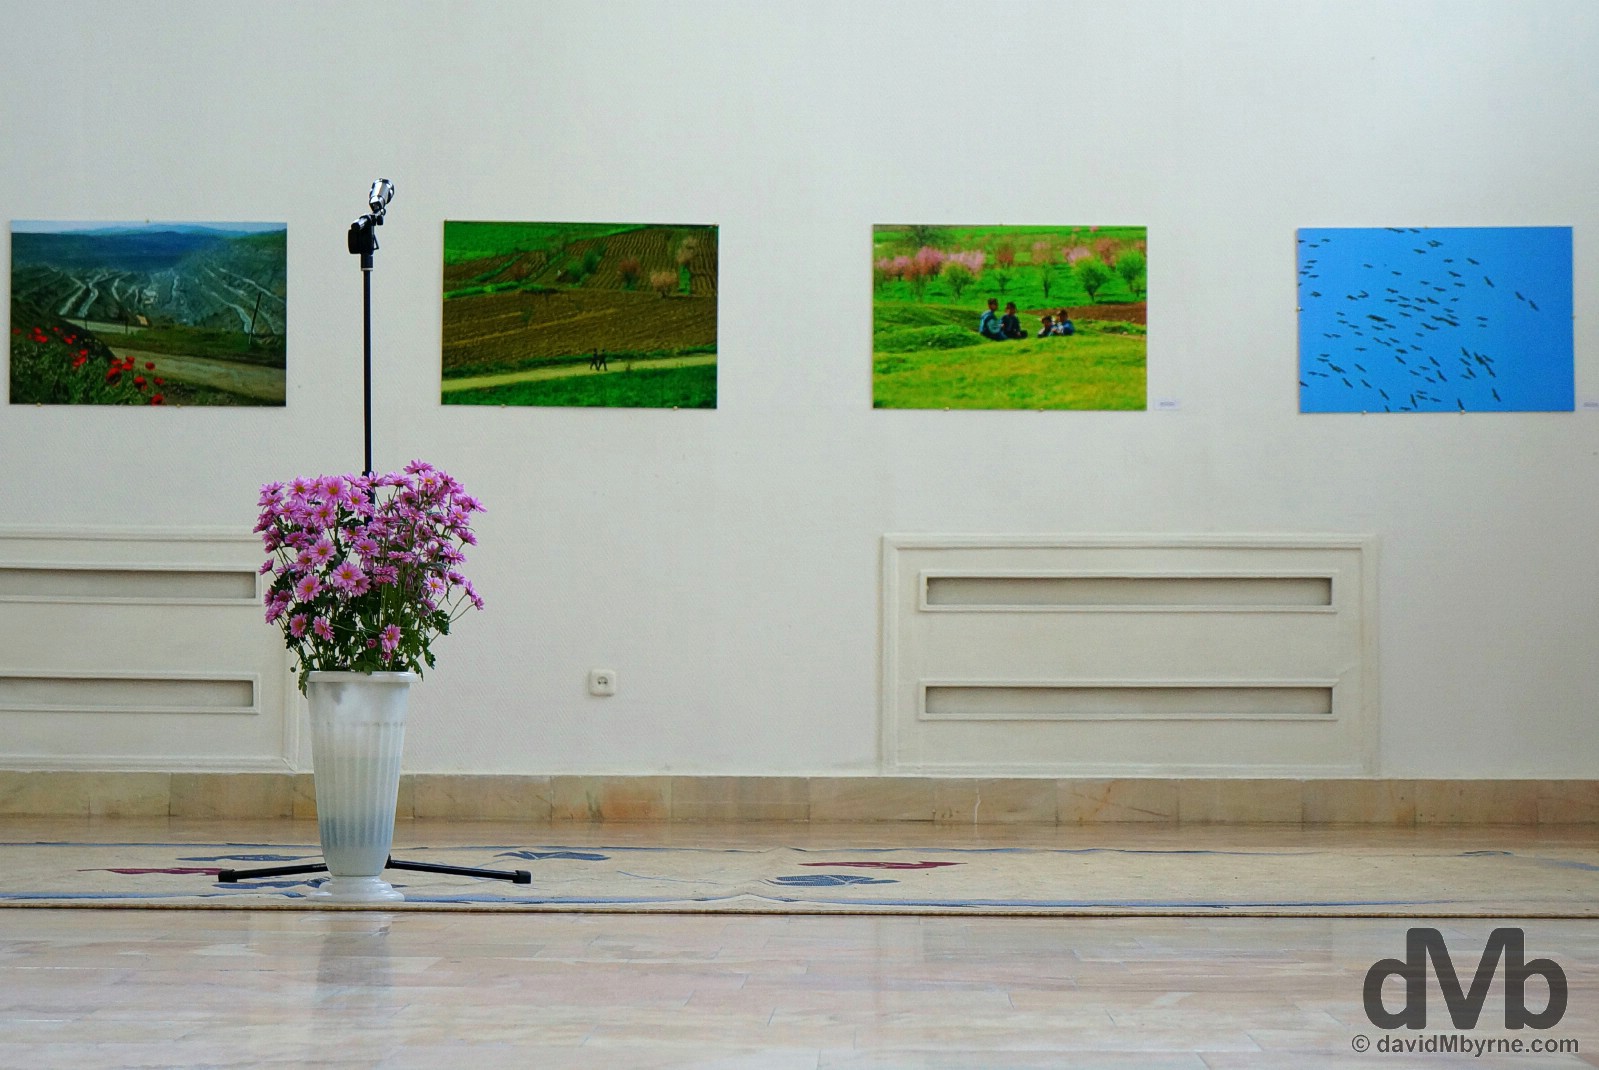 House of Photography of the Academy of Arts of Uzbekistan in Tashkent, Uzbekistan. March 17, 2015.